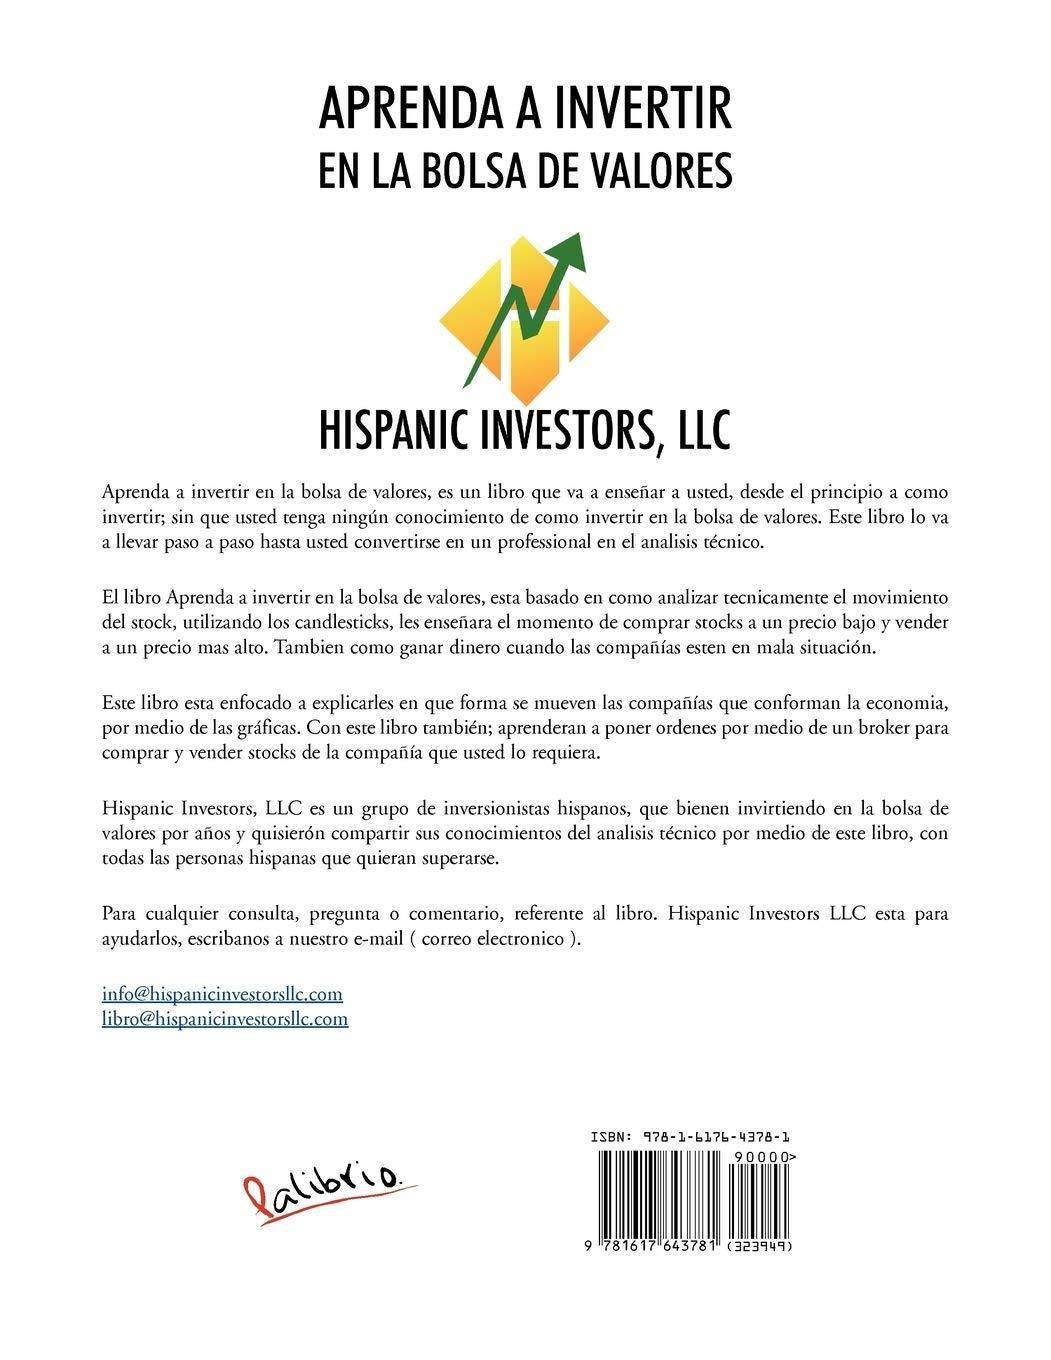 Aprenda A Invertir En La Bolsa De Valores - SureShot Books Publishing LLC